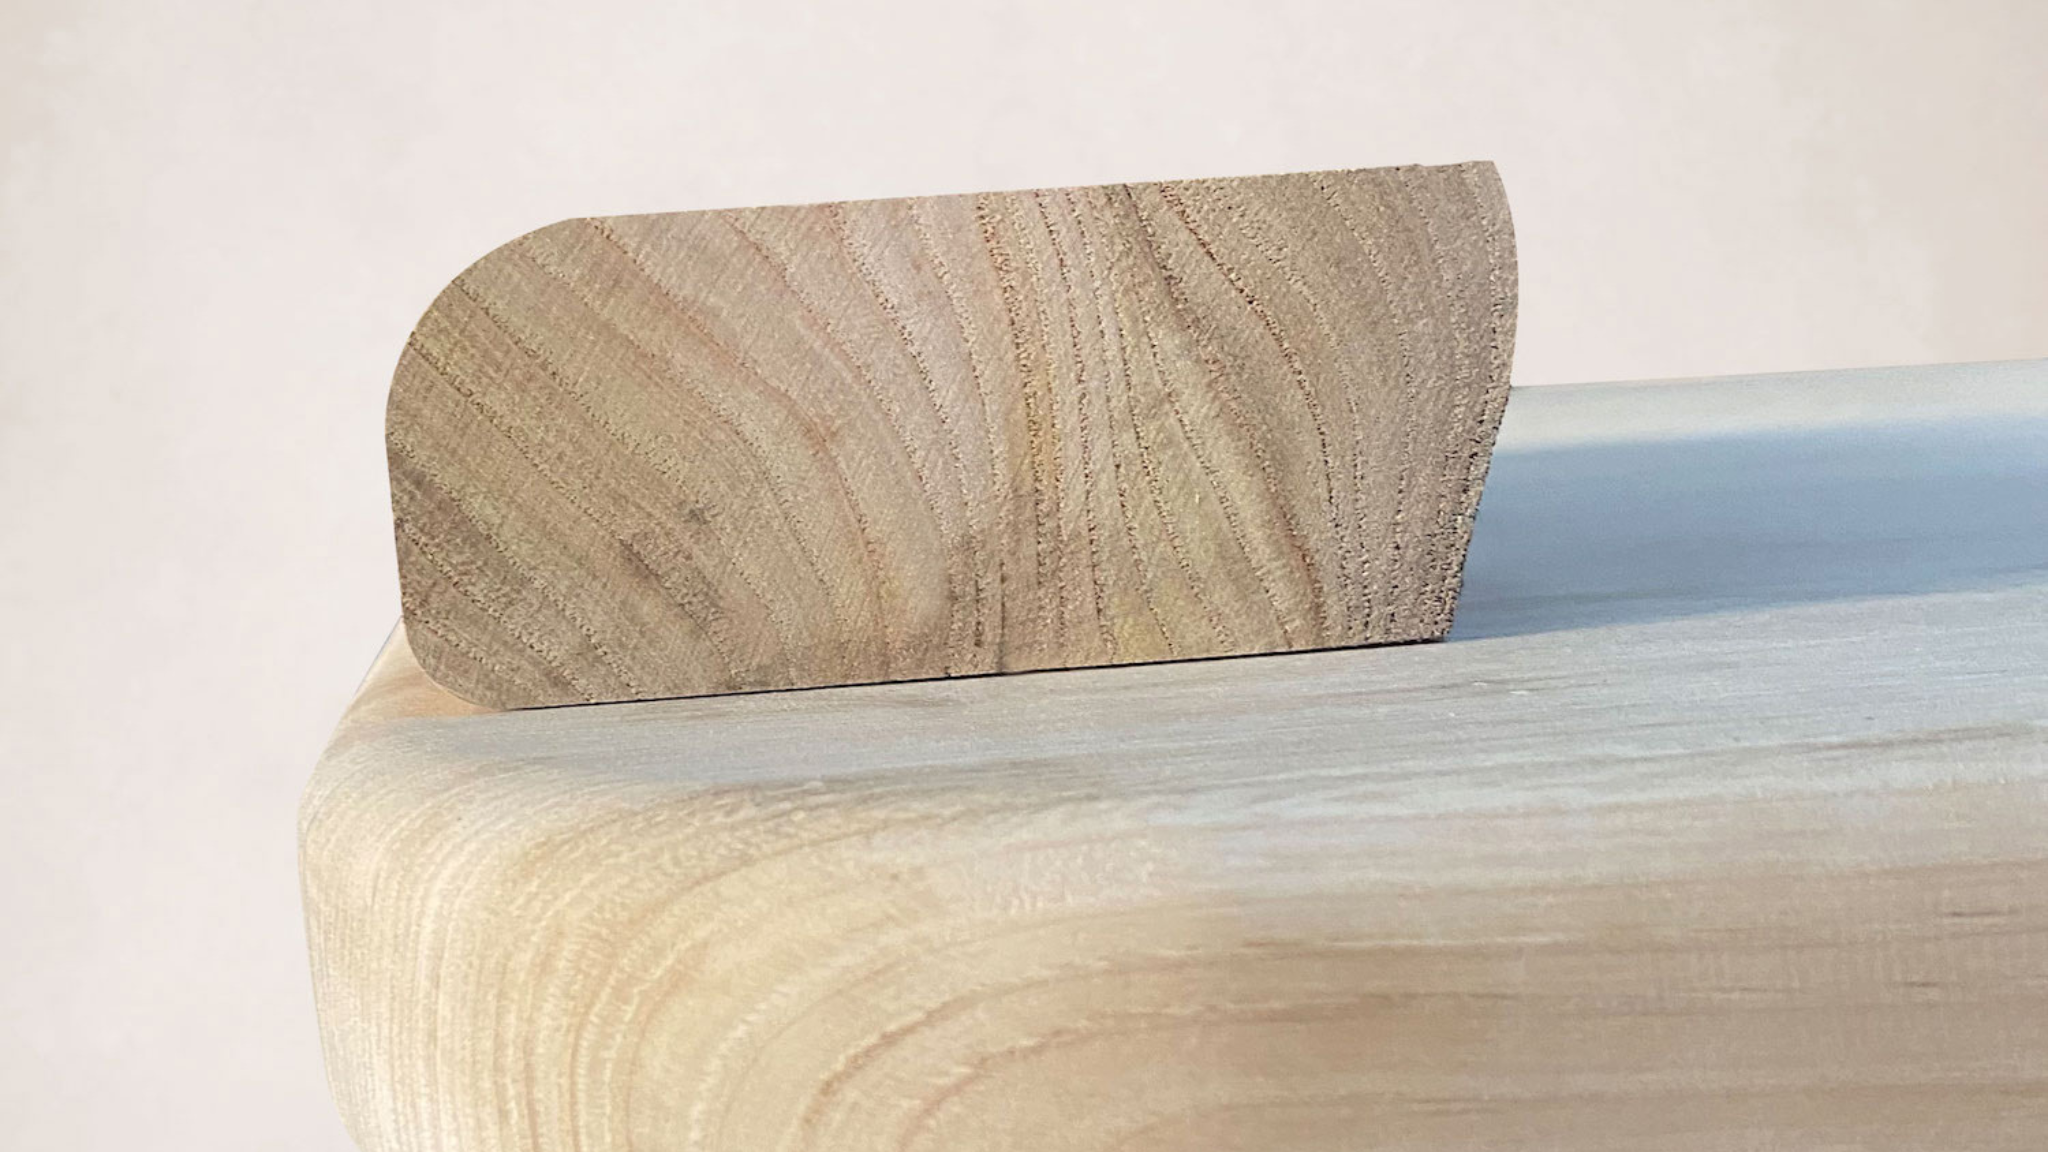 Detail shot of wood grain